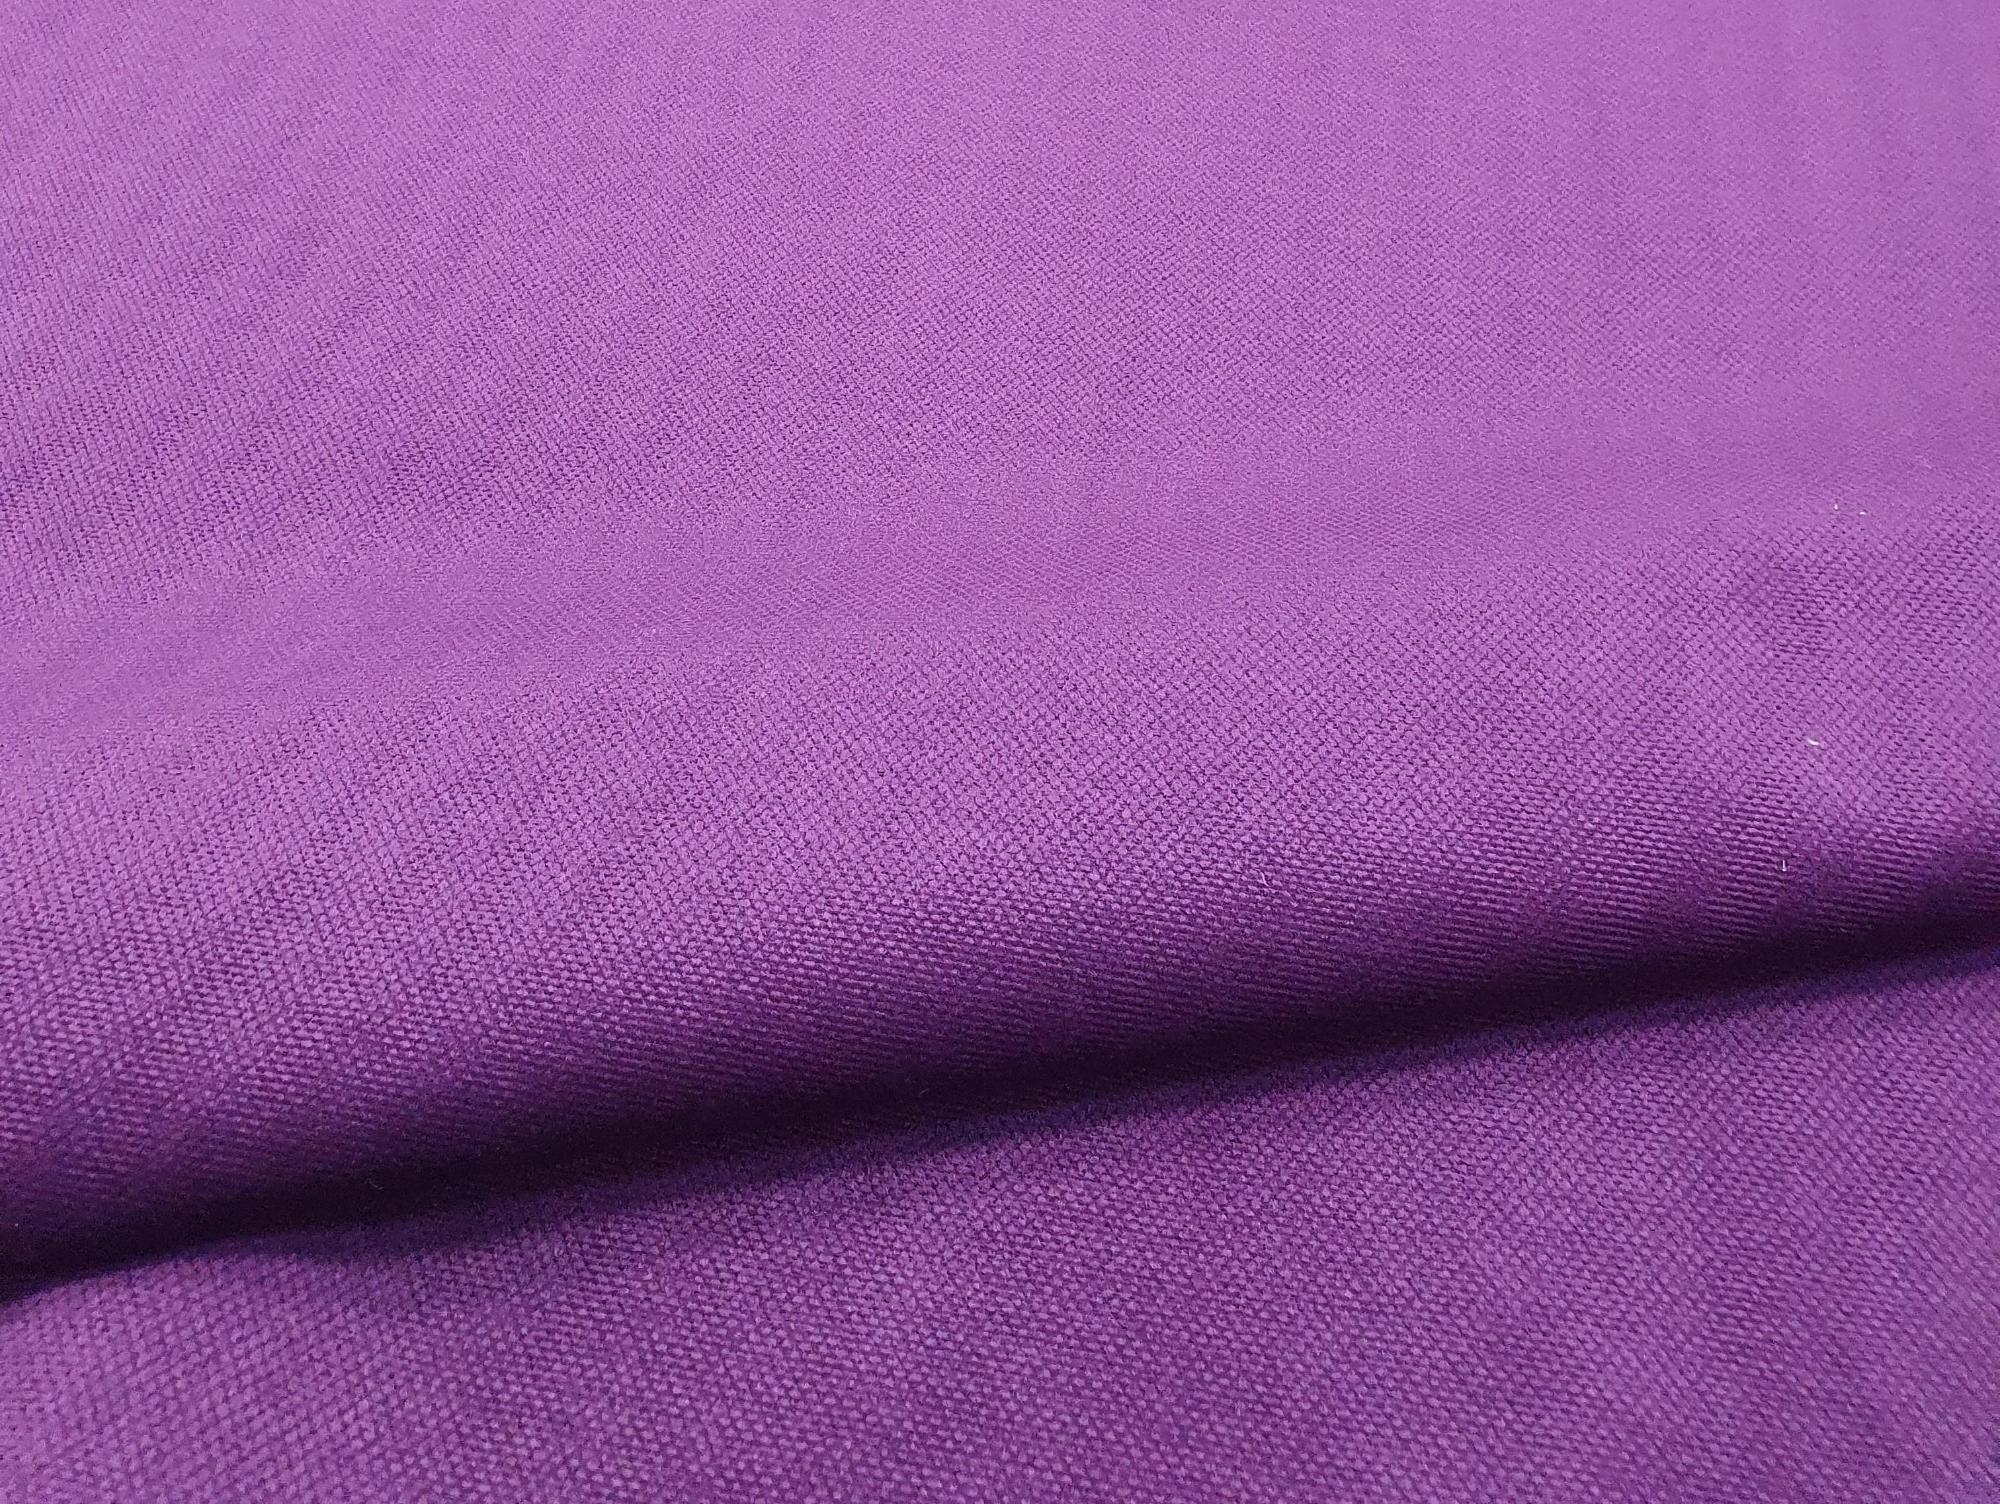 Кухонный угловой диван Токио правый угол (Фиолетовый\Черный)